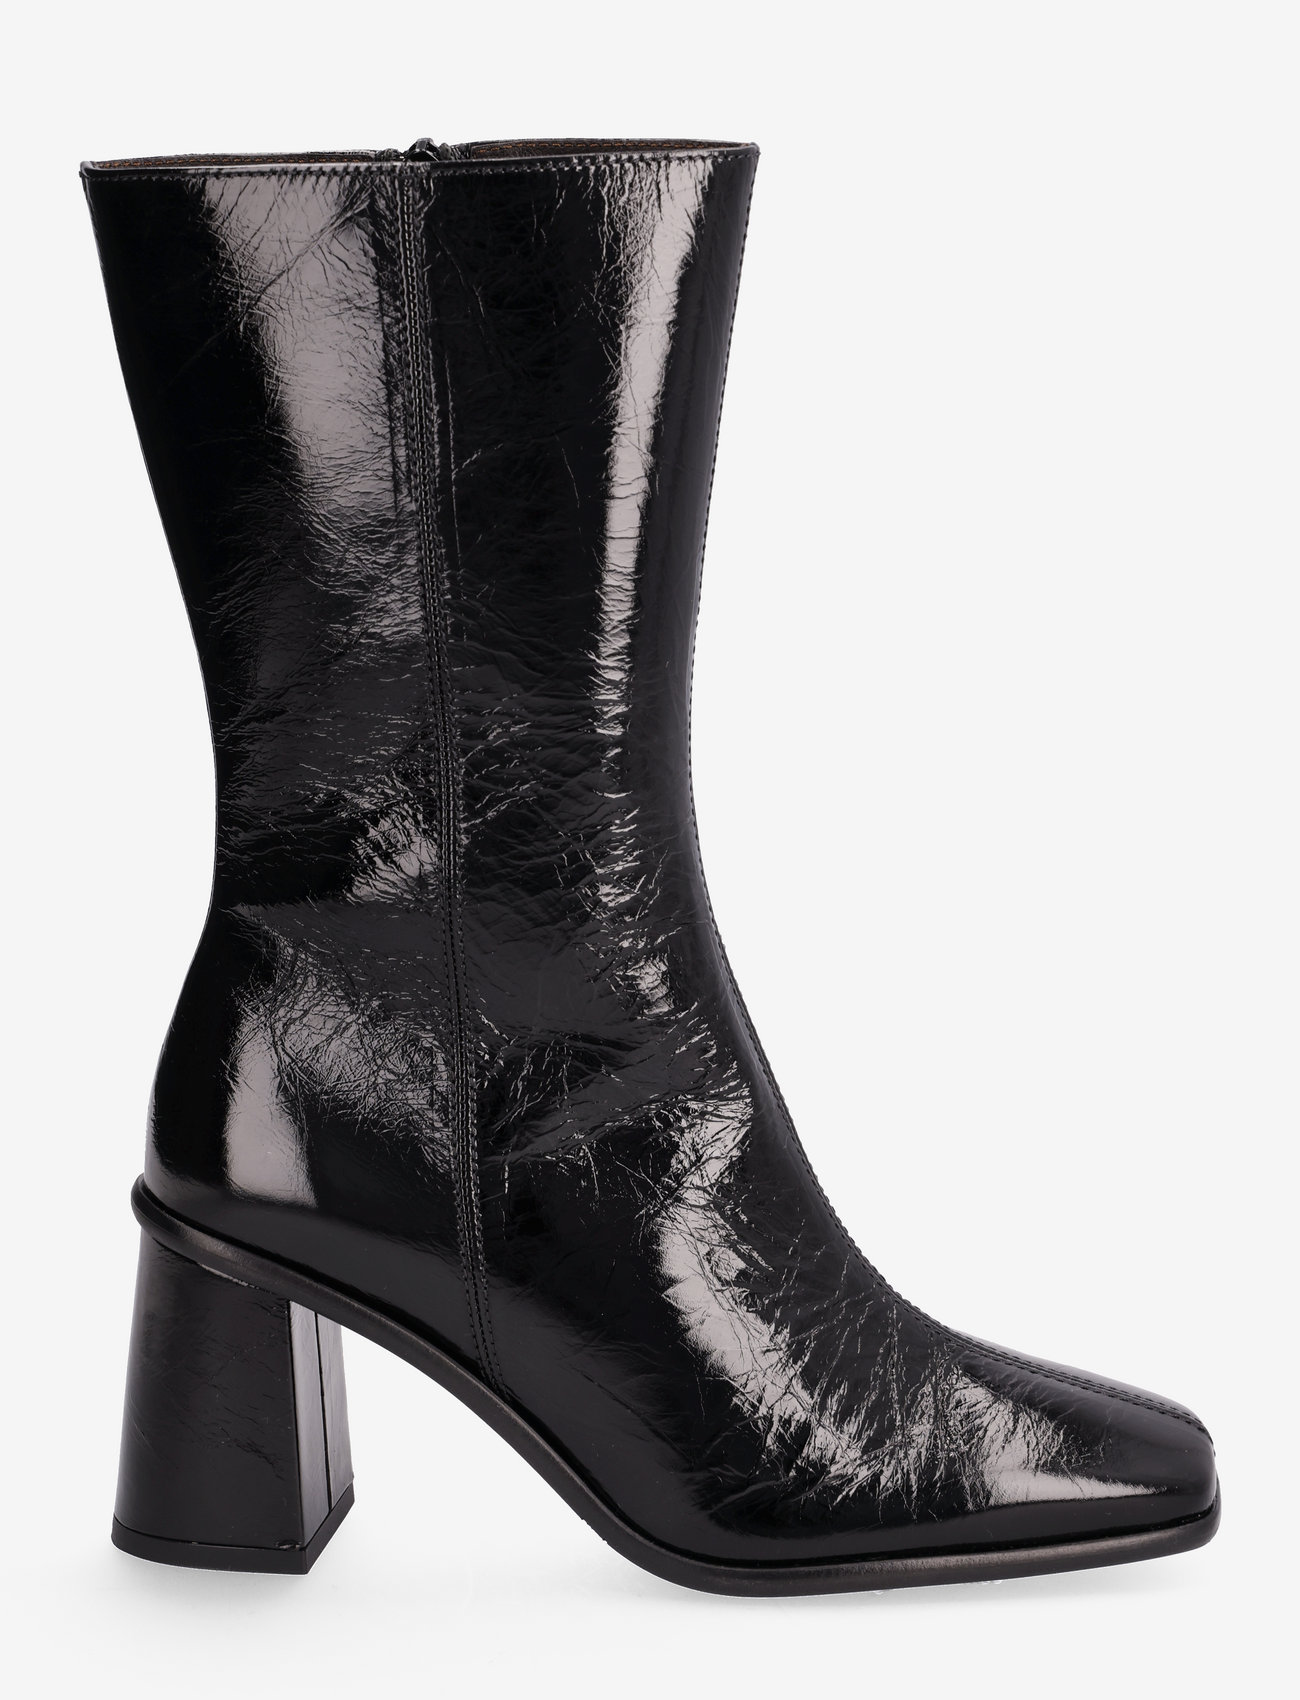 Billi Bi - Booties - high heel - black naplack 220 - 1